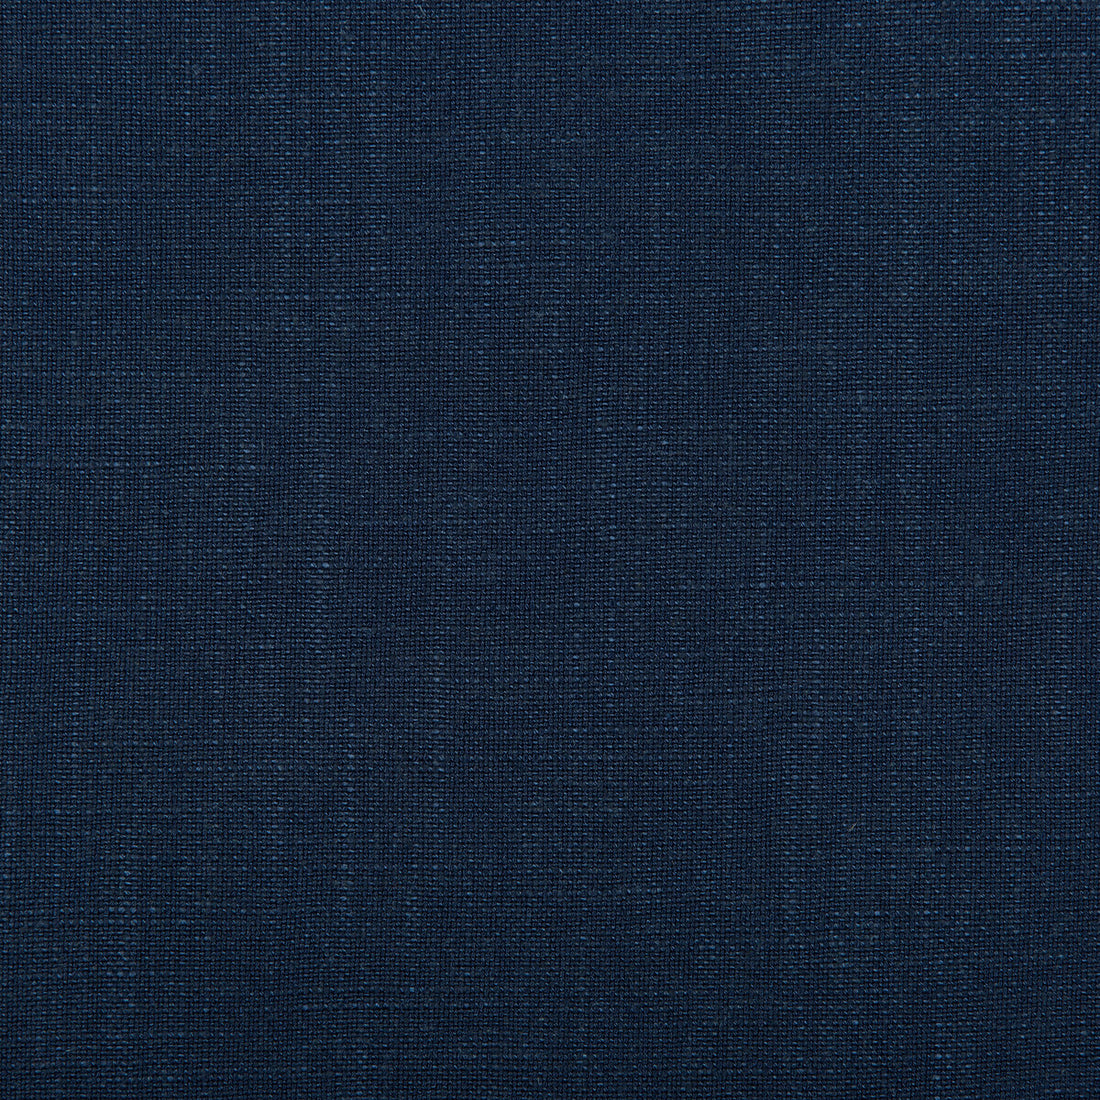 Aura fabric in cobalt color - pattern 35520.50.0 - by Kravet Design